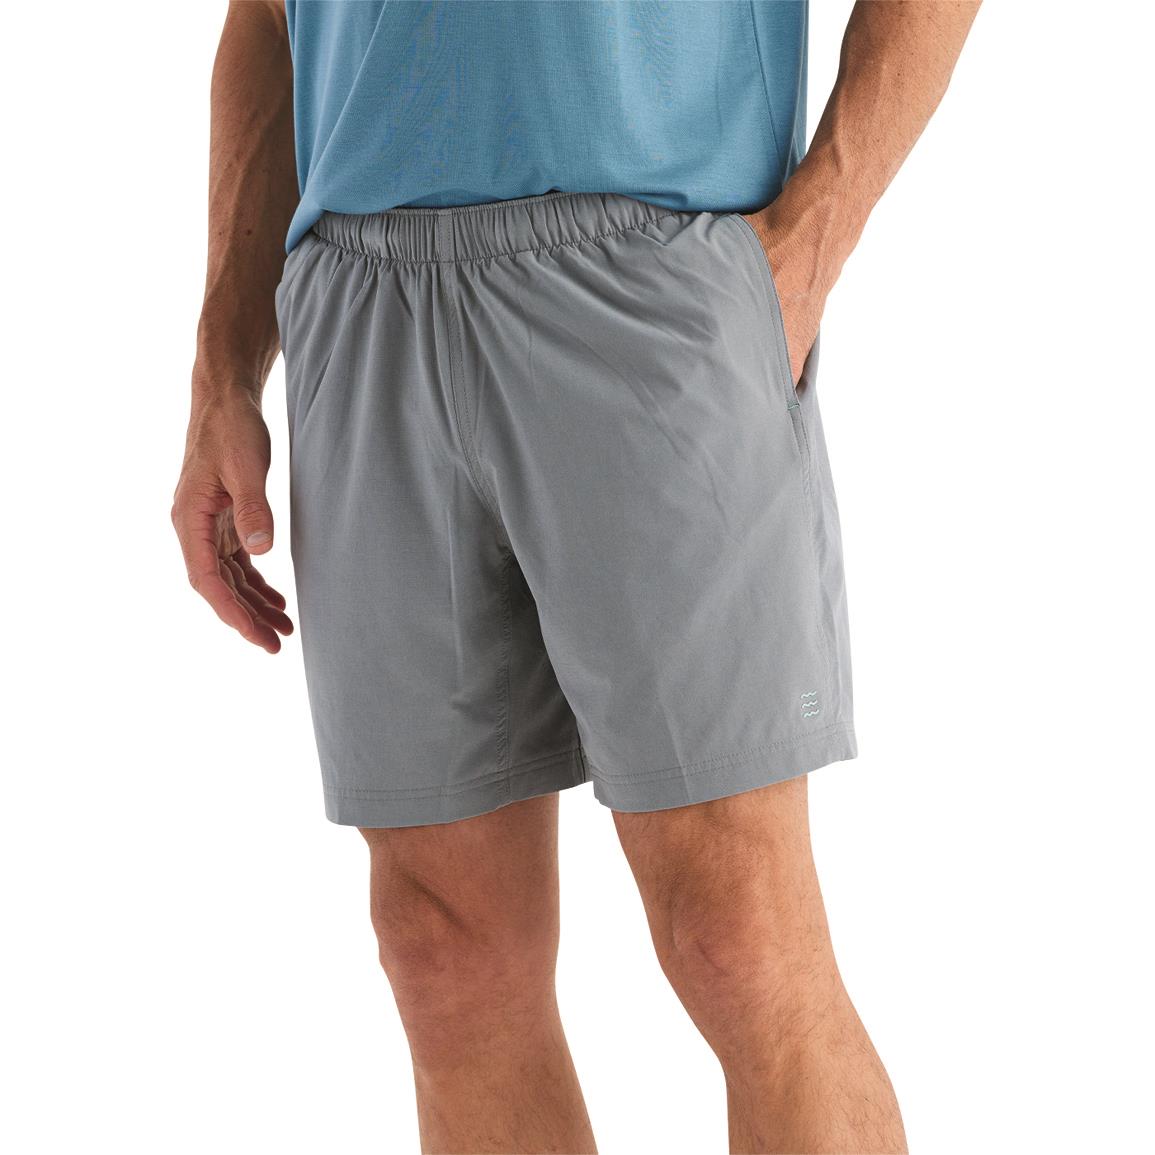 Free Fly Men's Breeze Shorts, 6" Inseam, Slate